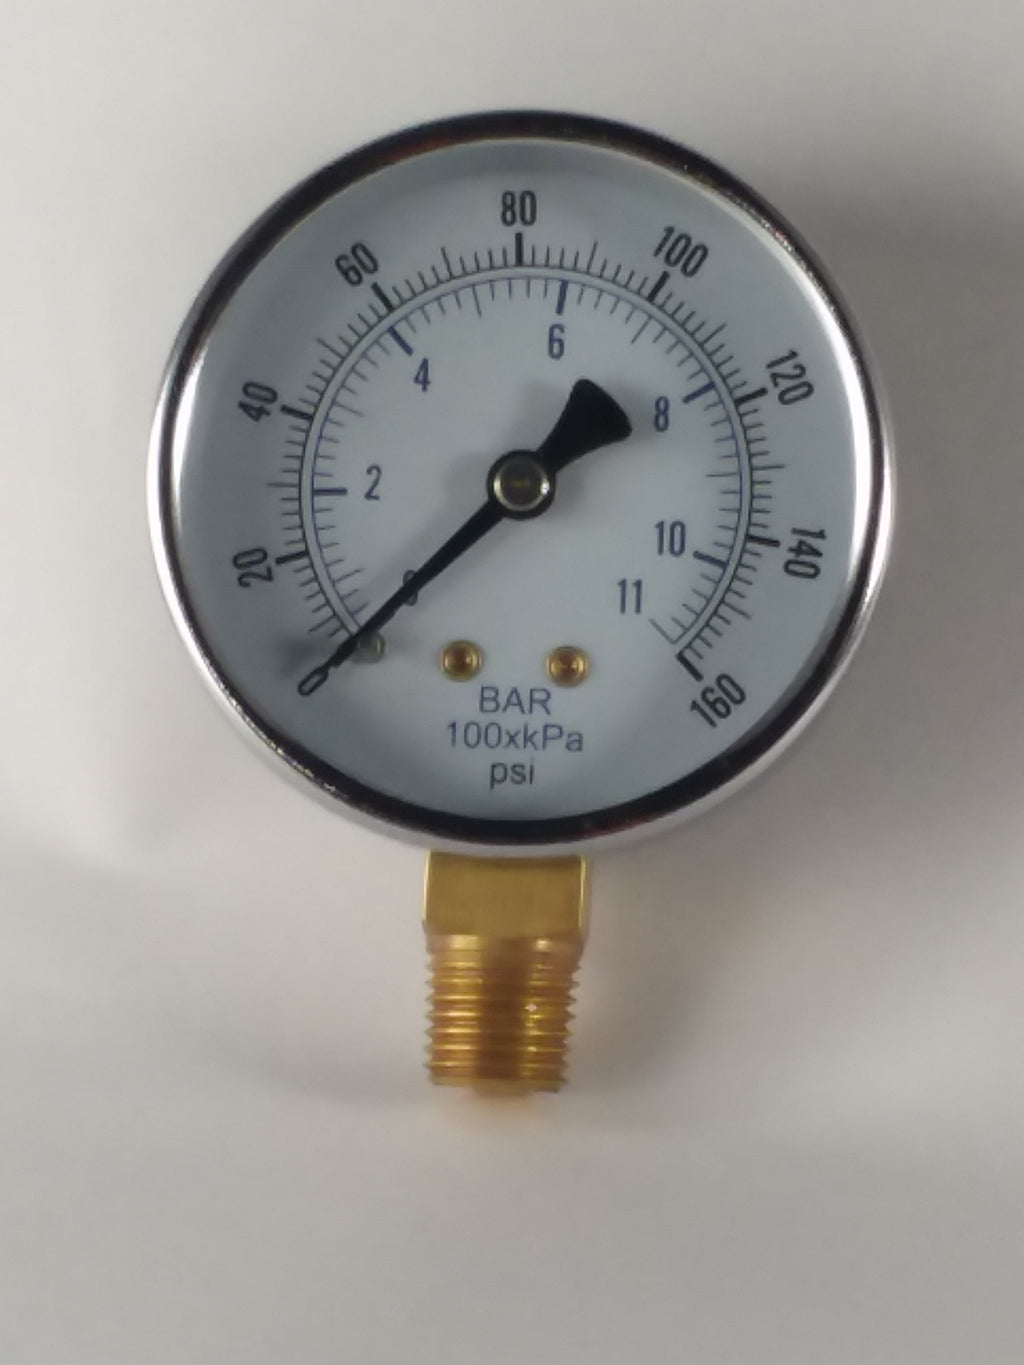 NEW 0-11 Bar-100xKPA 0-160psi Pressure Gauge Guage  2" dry 